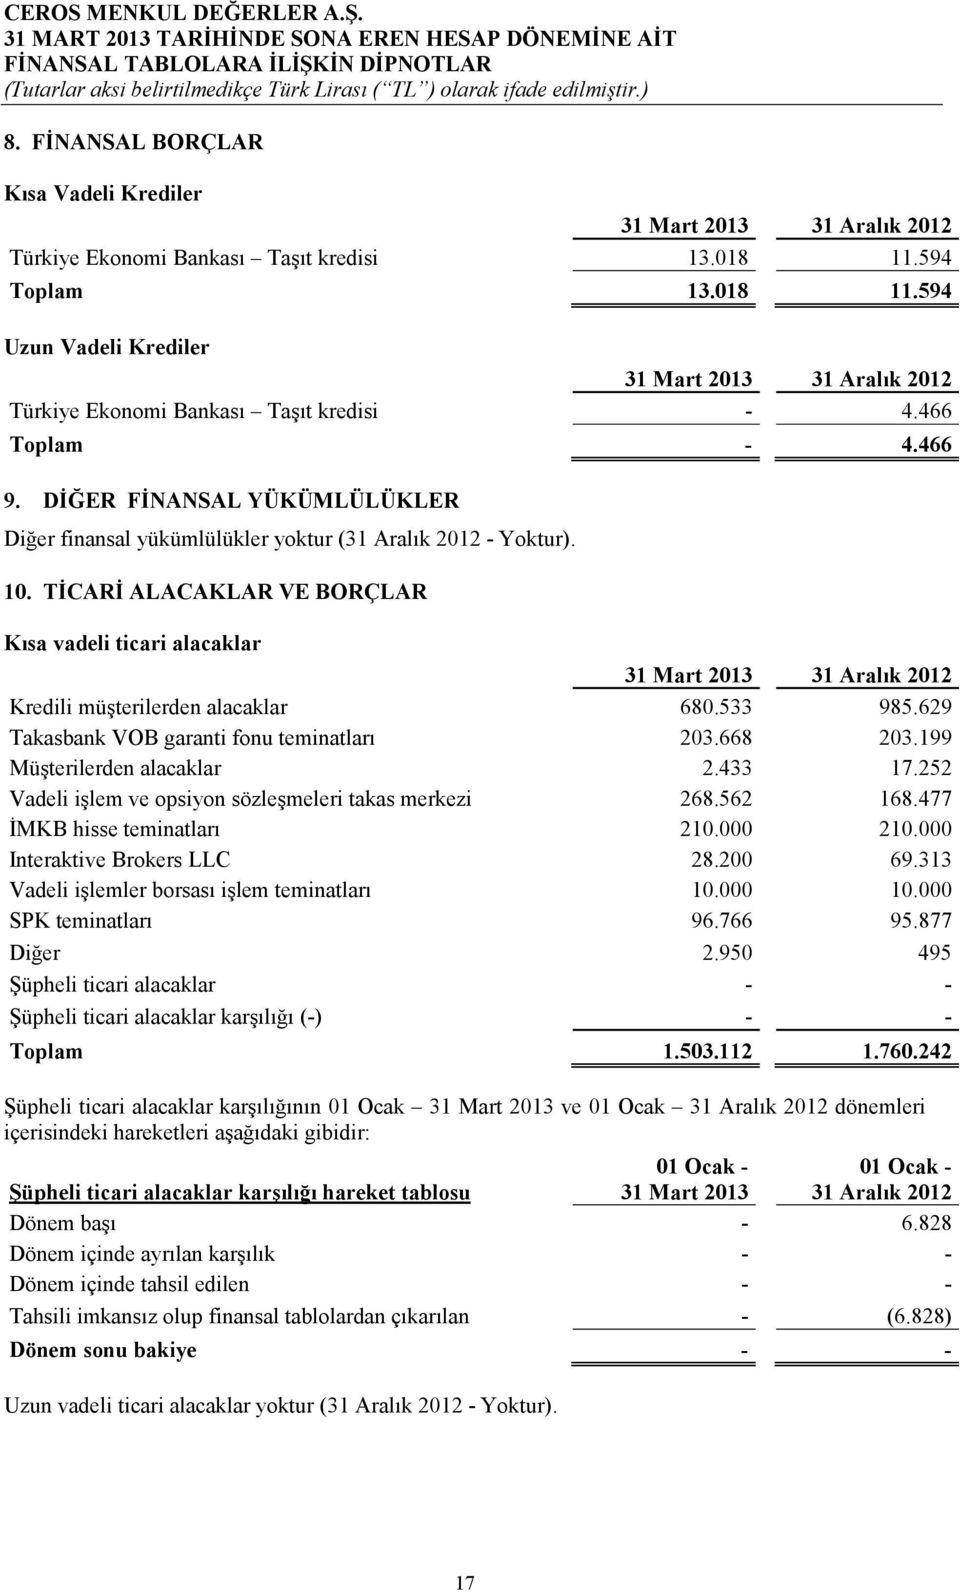 TĐCARĐ ALACAKLAR VE BORÇLAR Kısa vadeli ticari alacaklar 31 Aralık 2012 Kredili müşterilerden alacaklar 680.533 985.629 Takasbank VOB garanti fonu teminatları 203.668 203.